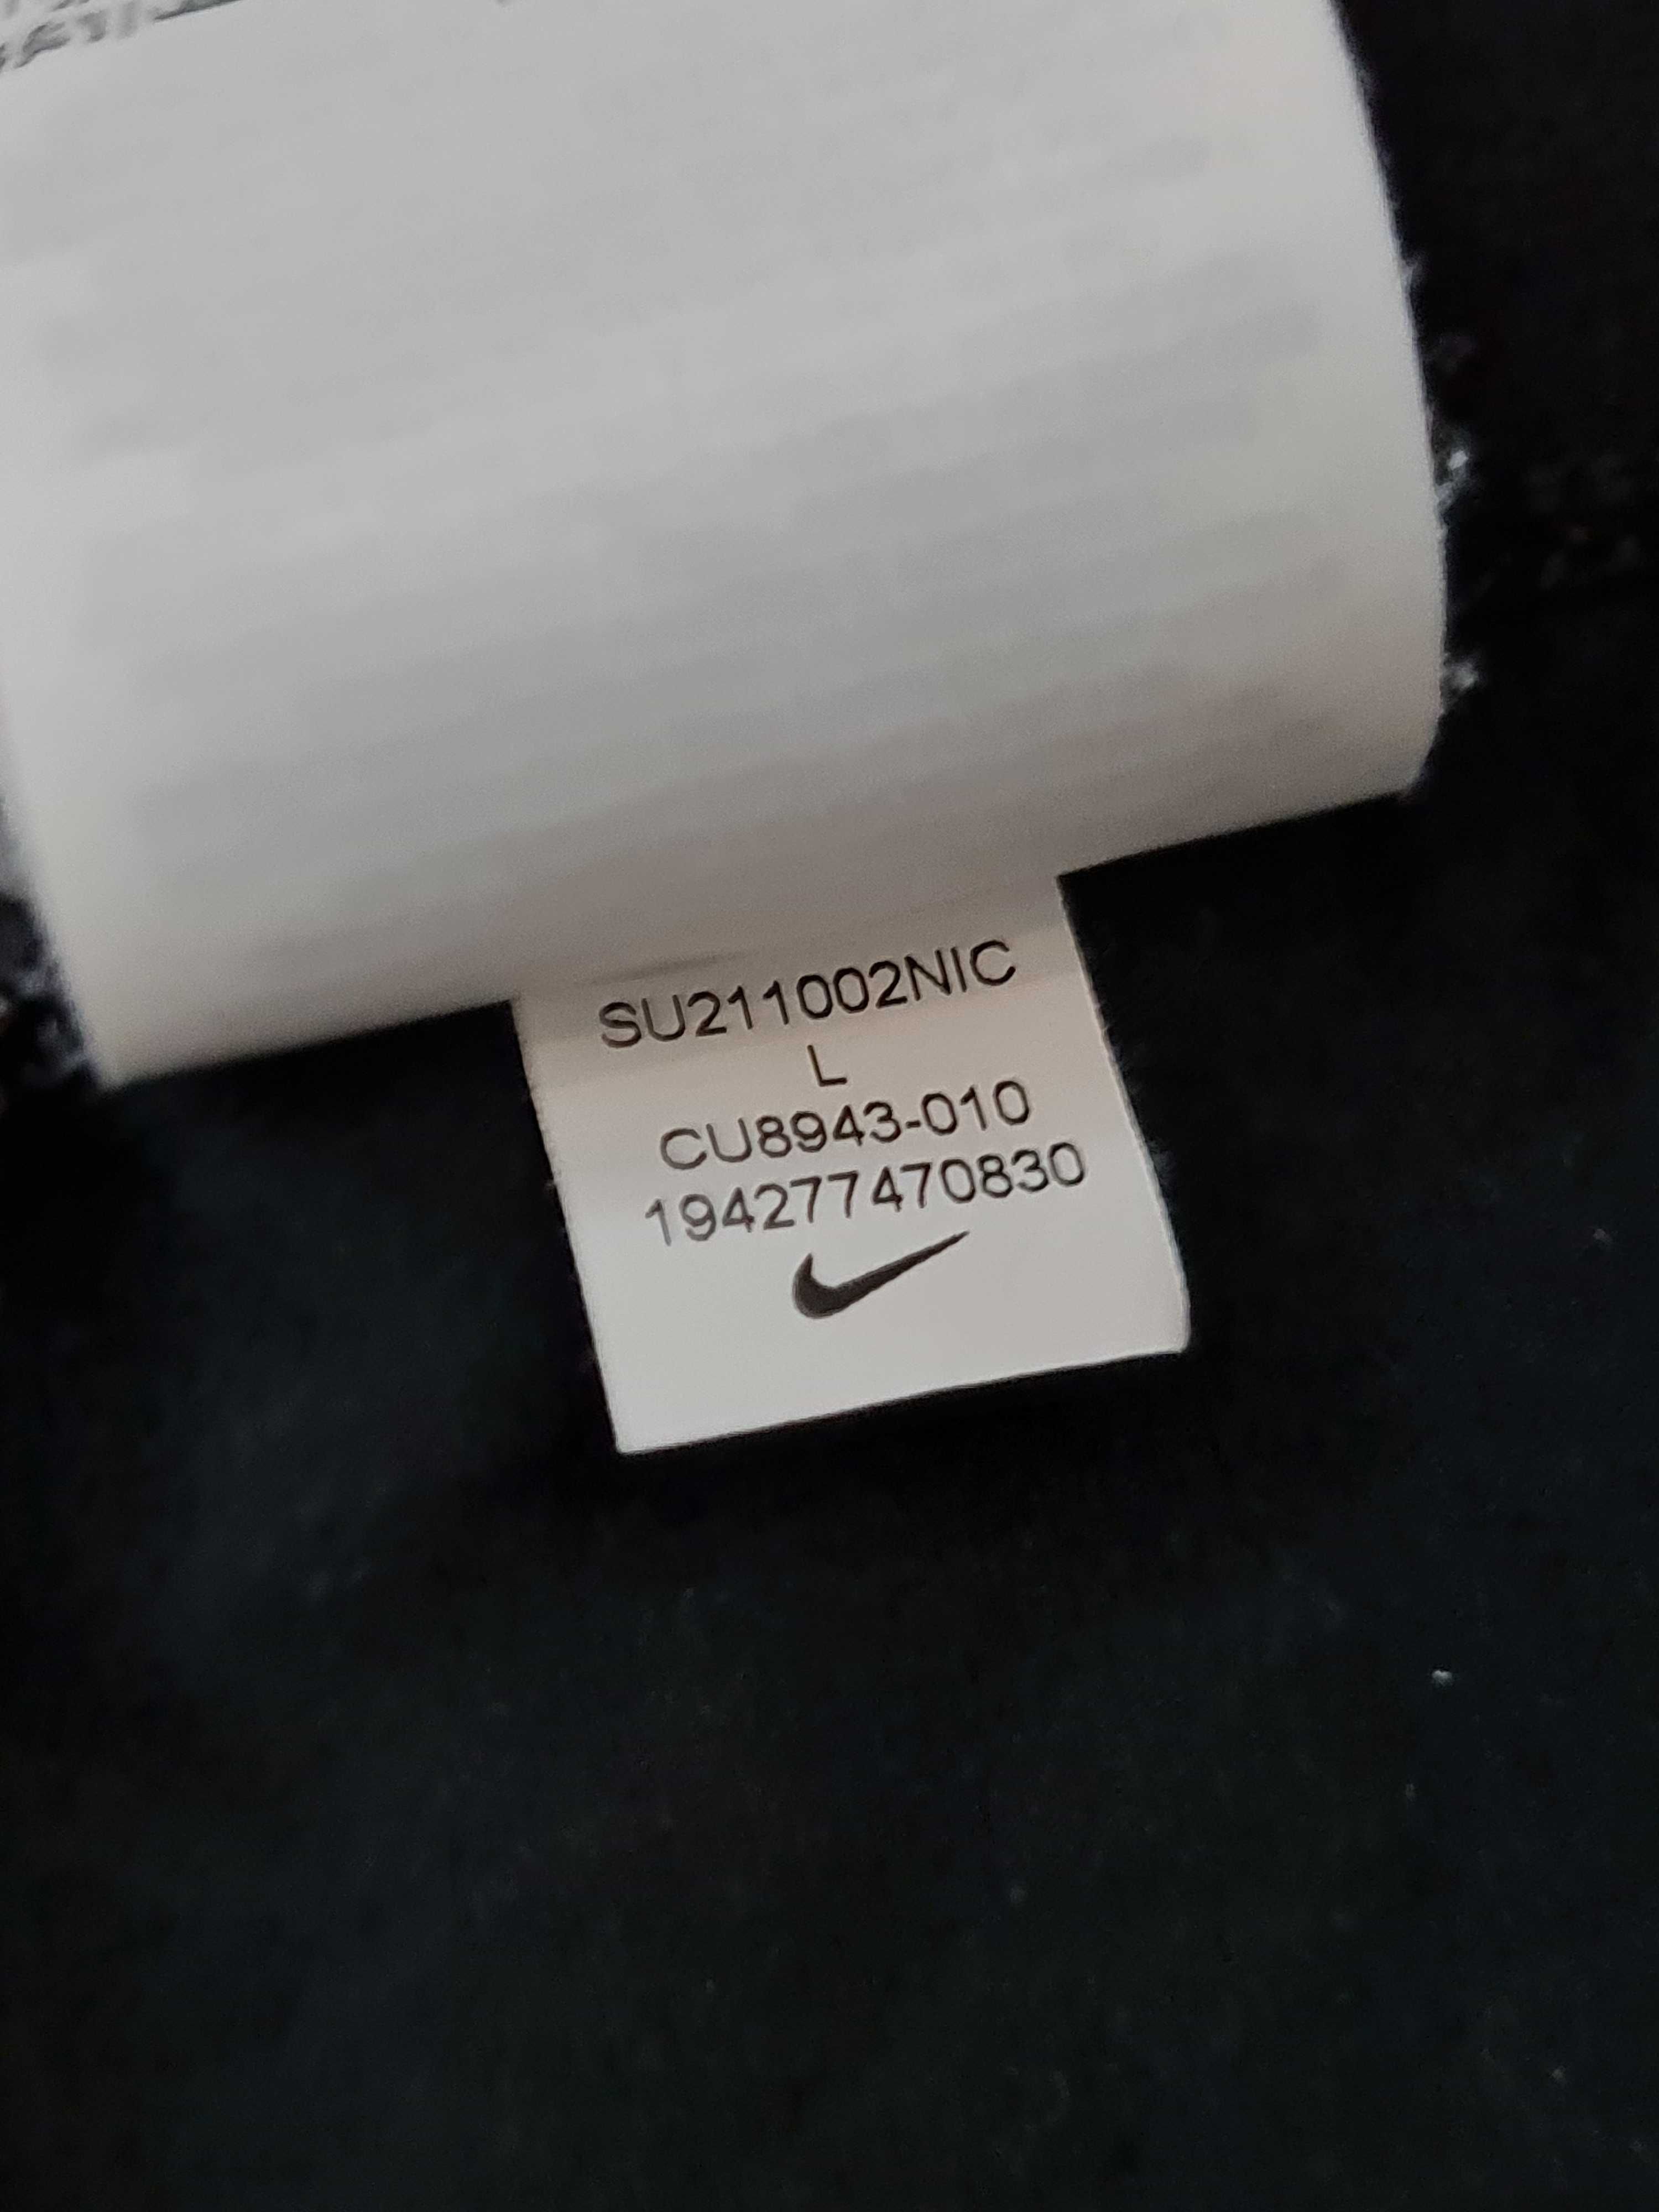 Spodnie Legginsy Nike Swoosh Logo Rozmiar XS / S Czarne Oryginalne